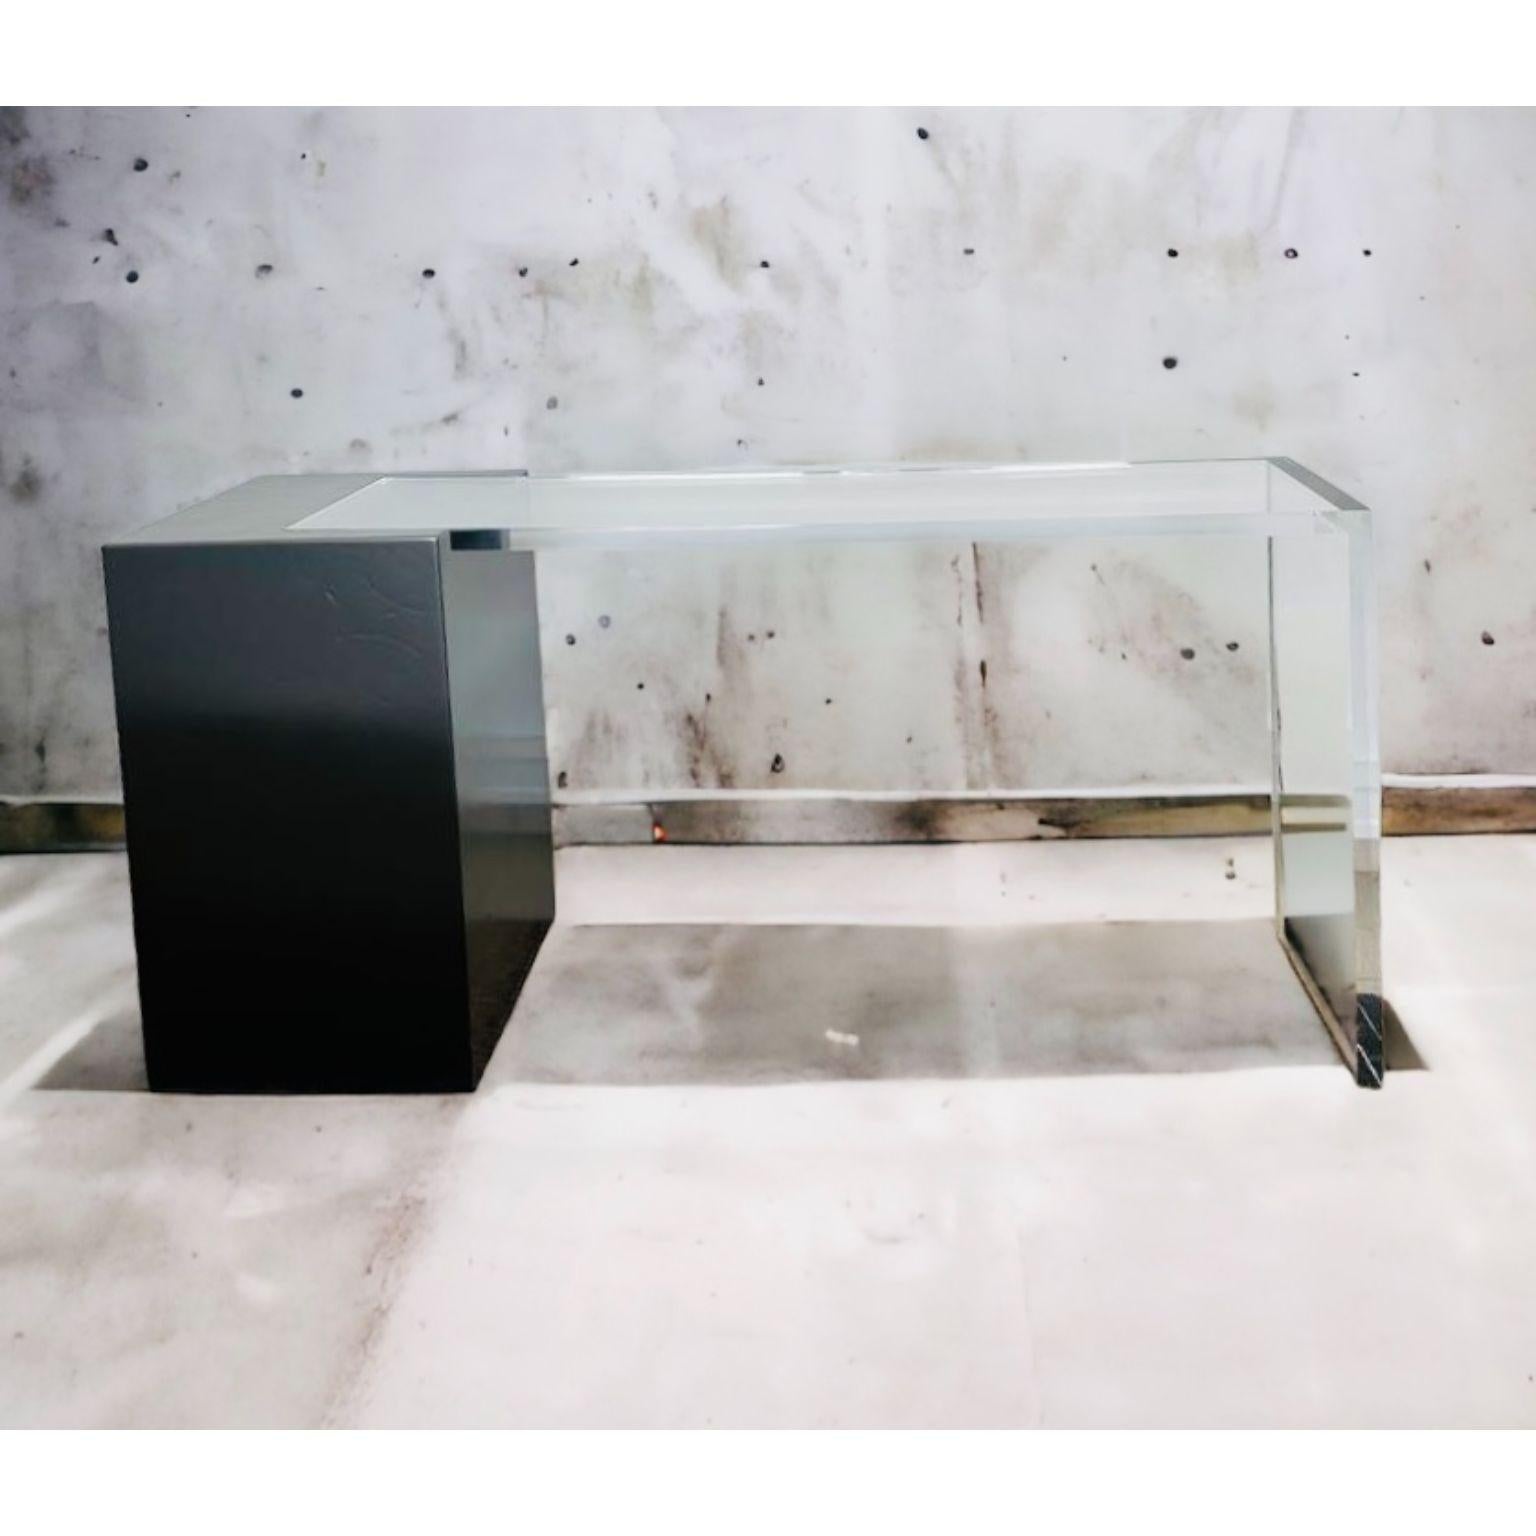 Table console noire Ghost par Charly Bounan
Unique en son genre
Dimensions : D 35 x L 150 x H 75 cm. 
MATERIAL : Verre acrylique et acier peint.

Également disponible dans une autre couleur. Veuillez nous contacter.

Charly Bounan, est un designer